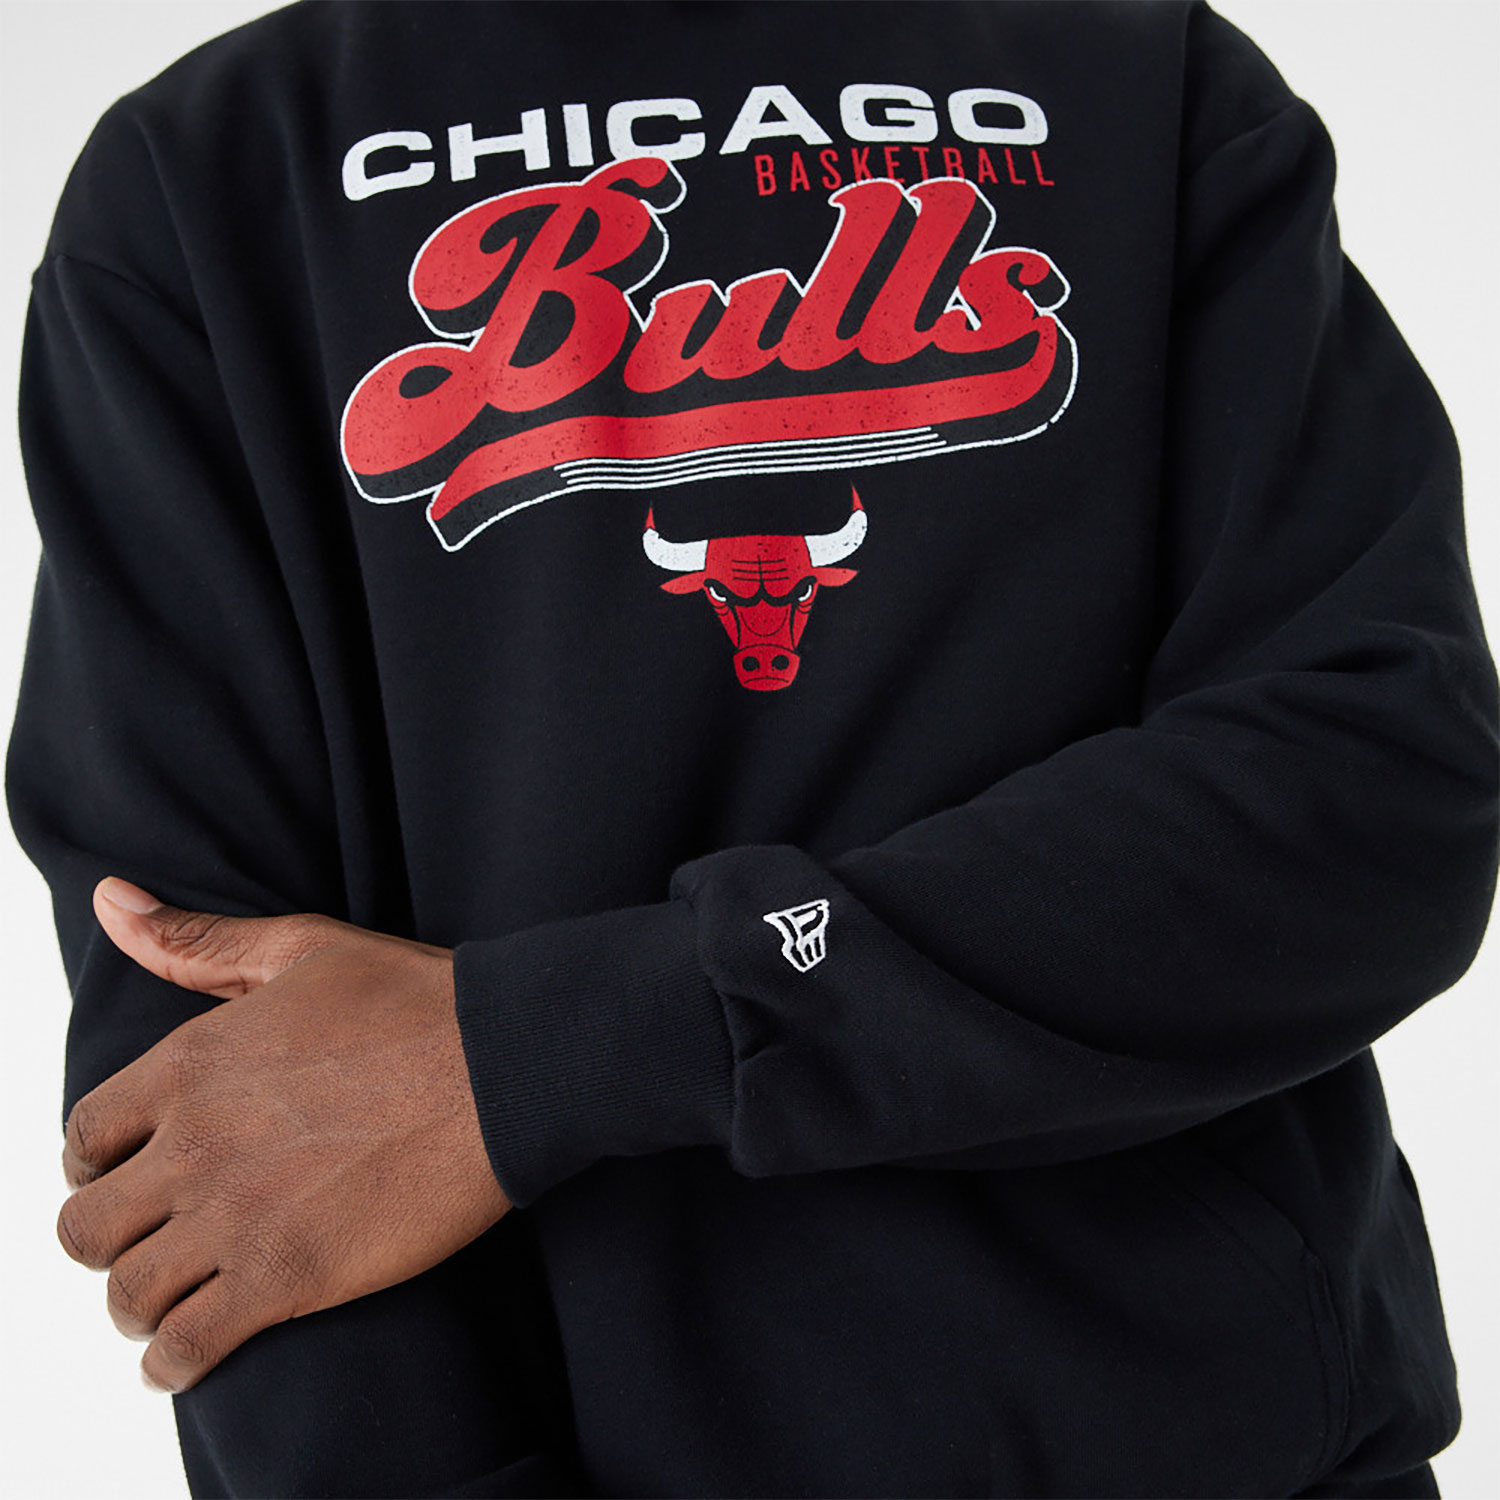 Chicago Bulls NBA Retro Graphic Black Oversized Hoodie